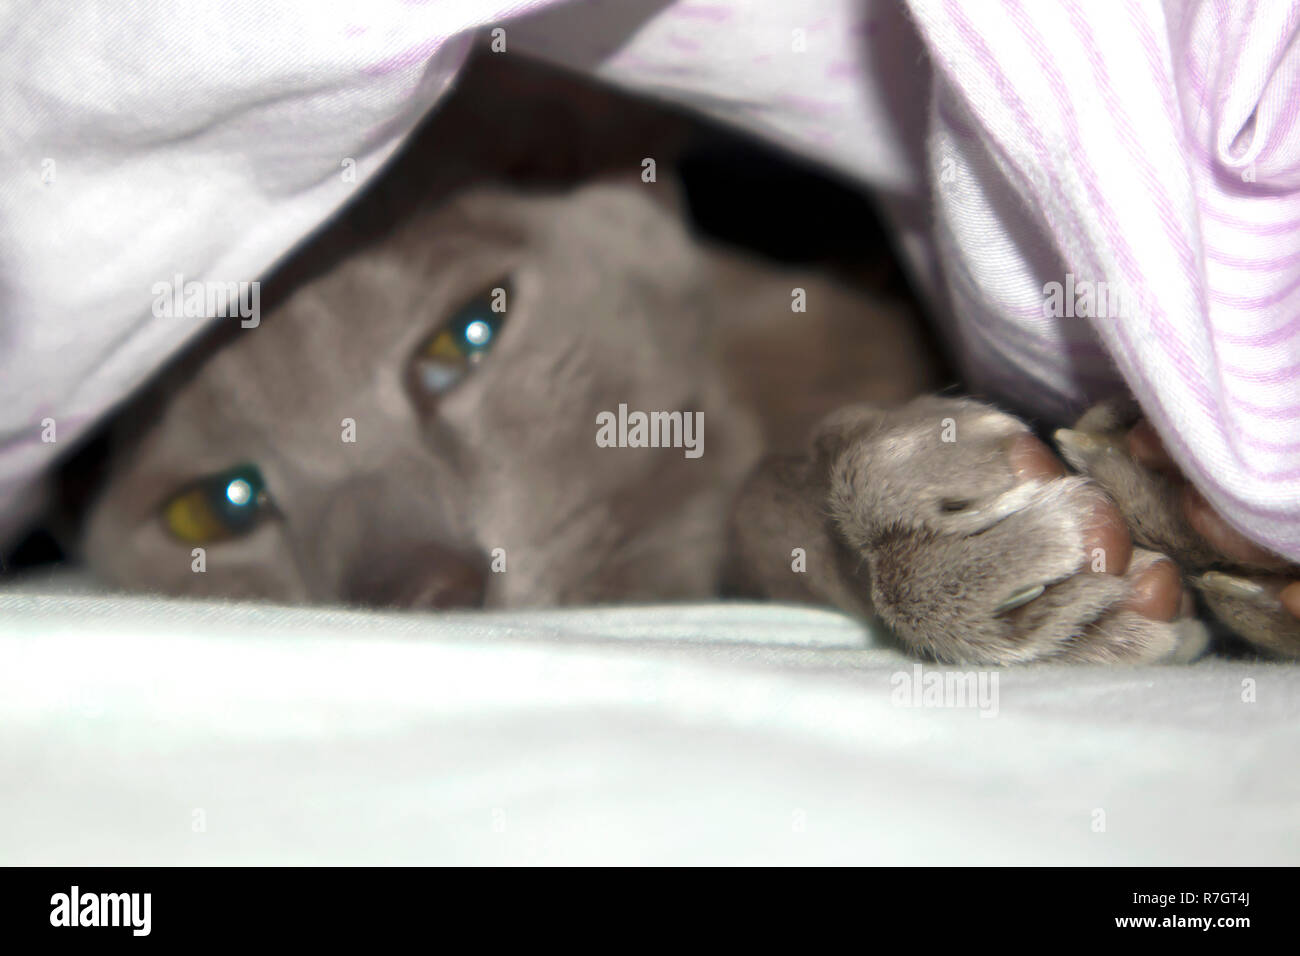 Adorable manteau lisse oriental lilas chat posant sous la couverture sur le lit Banque D'Images